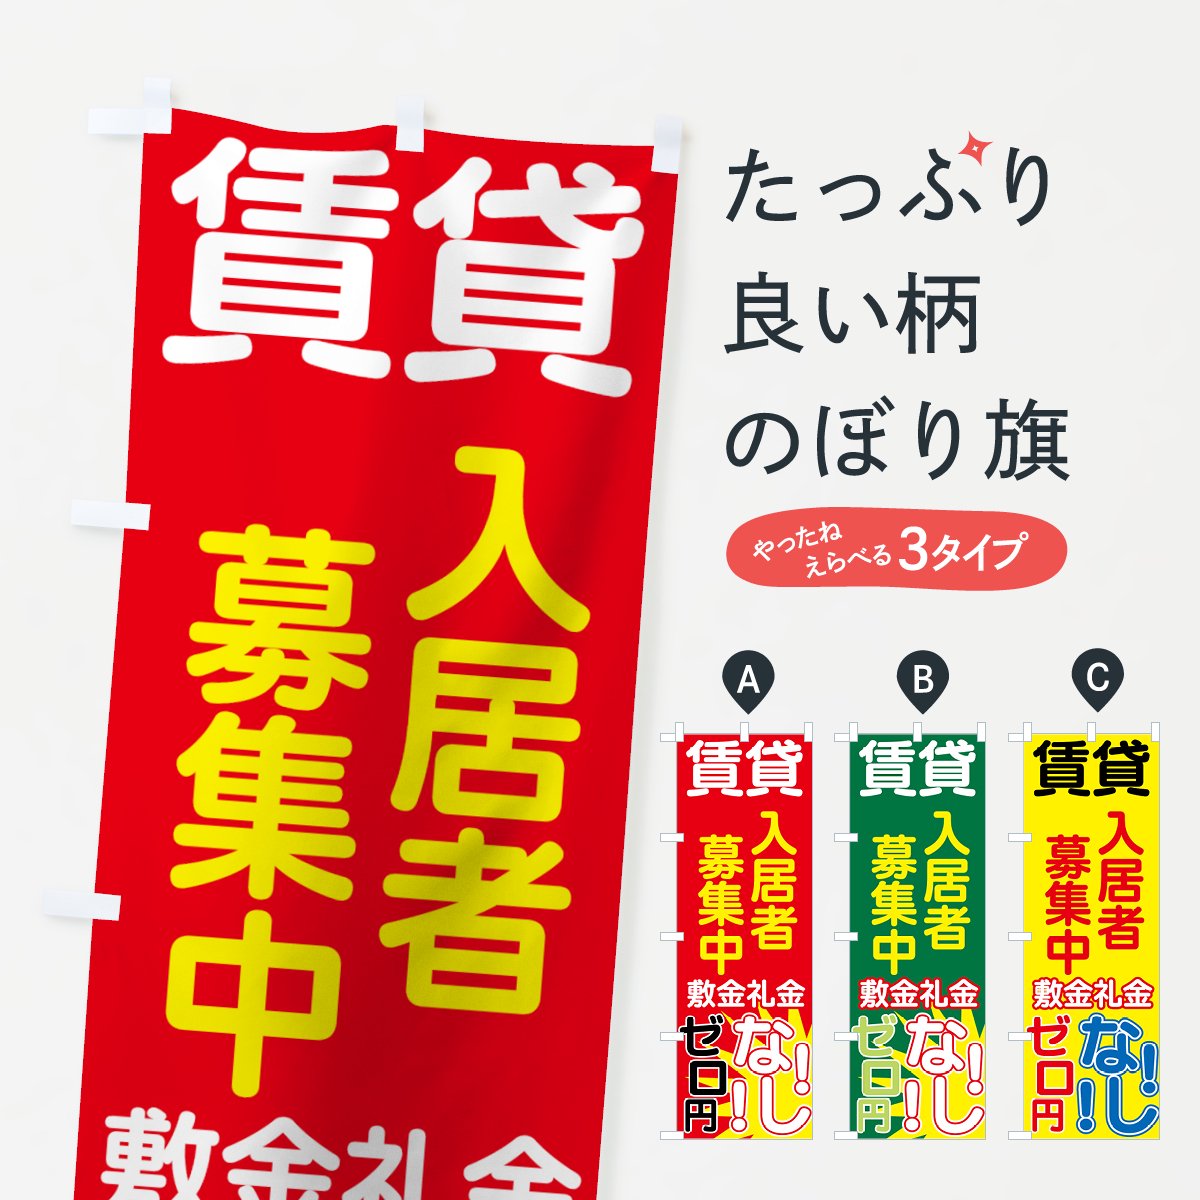 日本ブイシーエス 「入居者募集中」 のぼり旗 V0237-B - 4